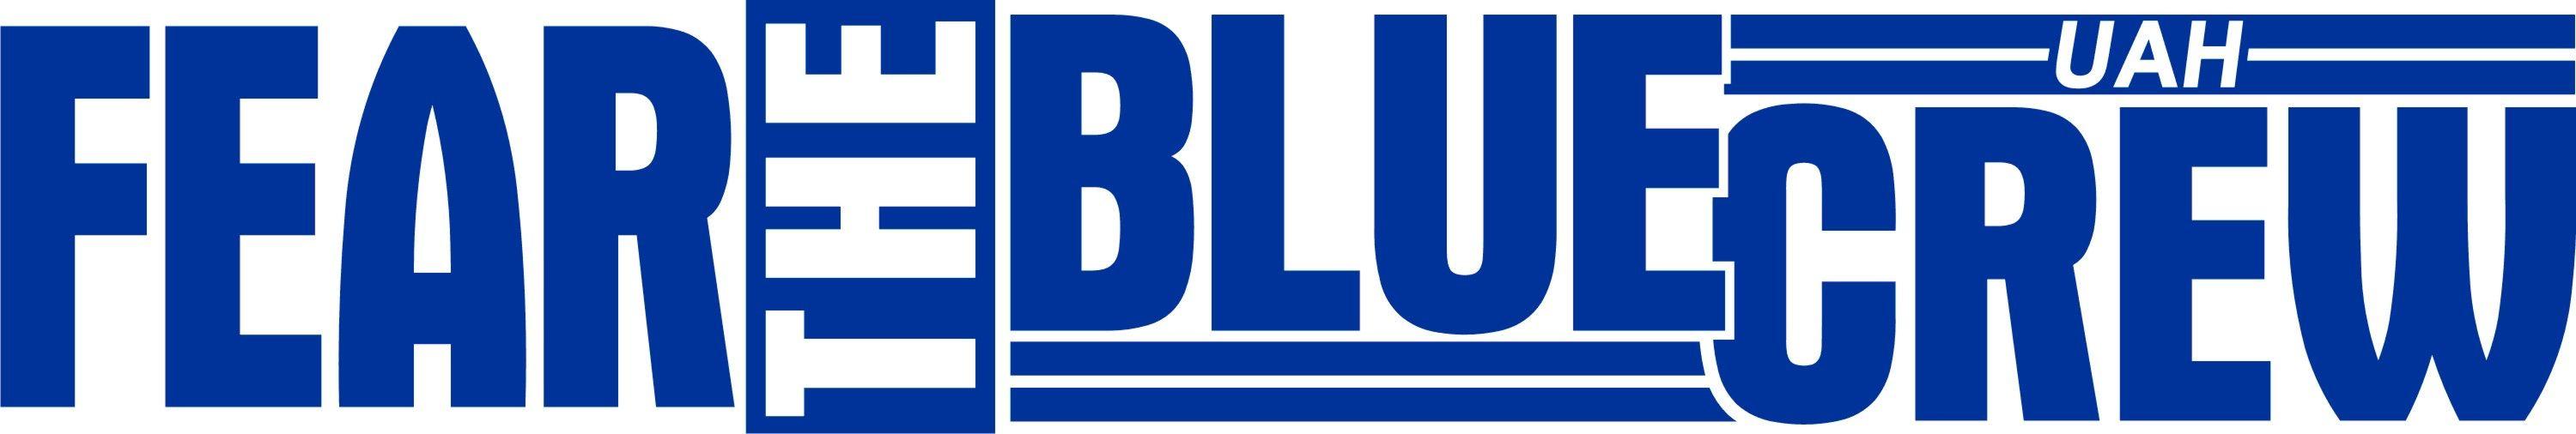 Blue Crew Logo - Uncategorized. UAH Blue Crew's